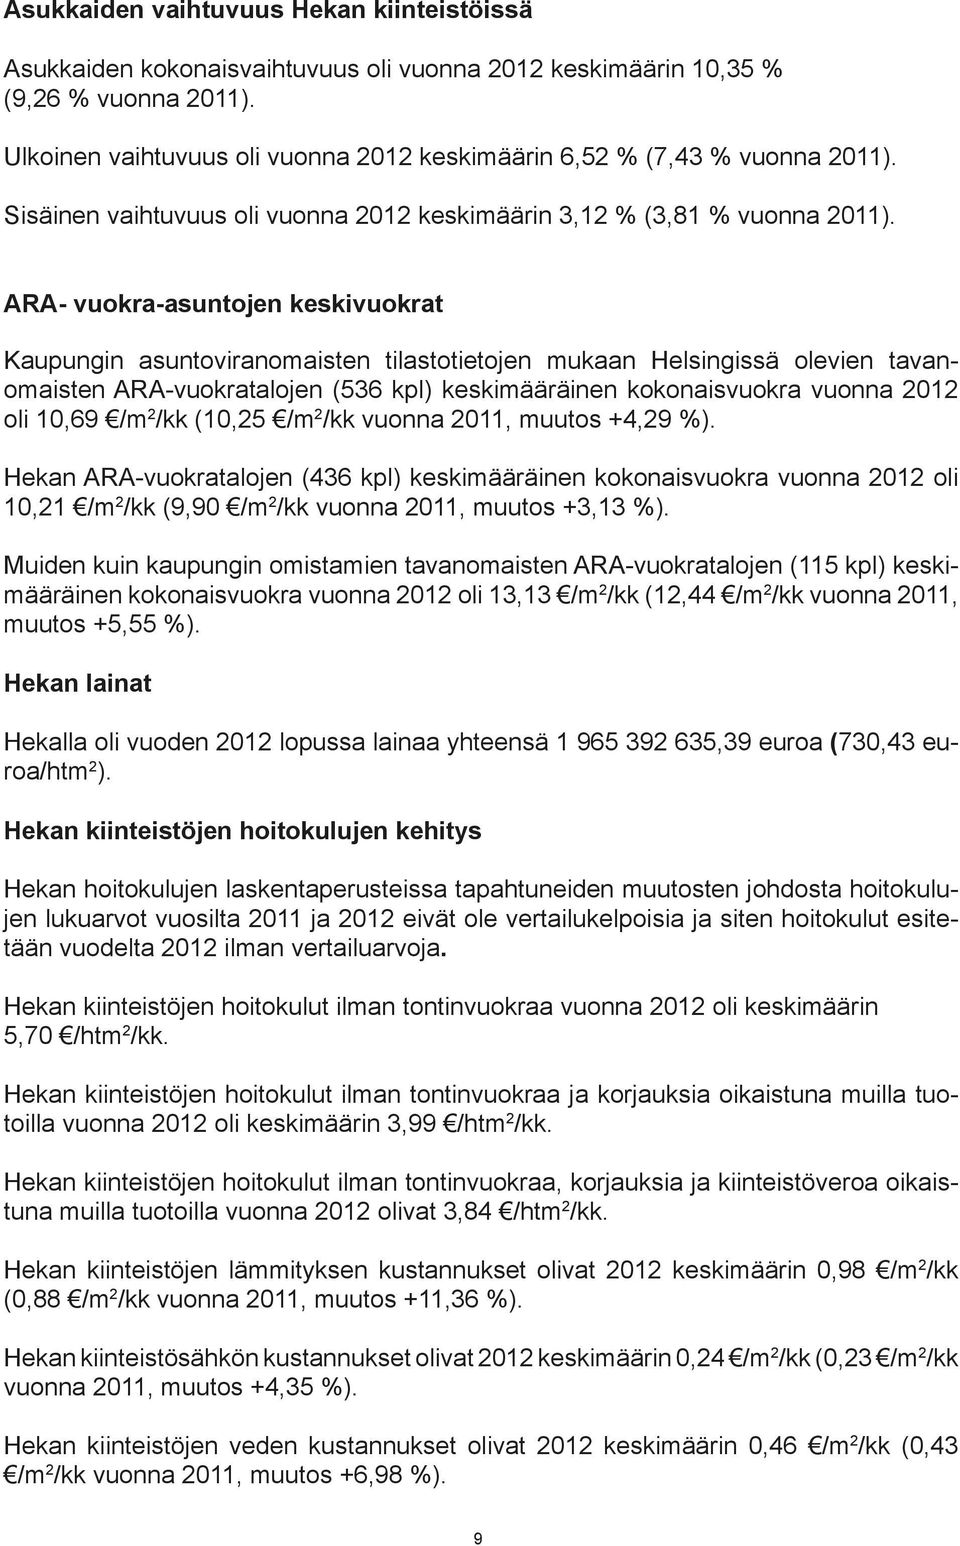 ARA- vuokra-asuntojen keskivuokrat Kaupungin asuntoviranomaisten tilastotietojen mukaan Helsingissä olevien tavanomaisten ARA-vuokratalojen (536 kpl) keskimääräinen kokonaisvuokra vuonna 2012 oli